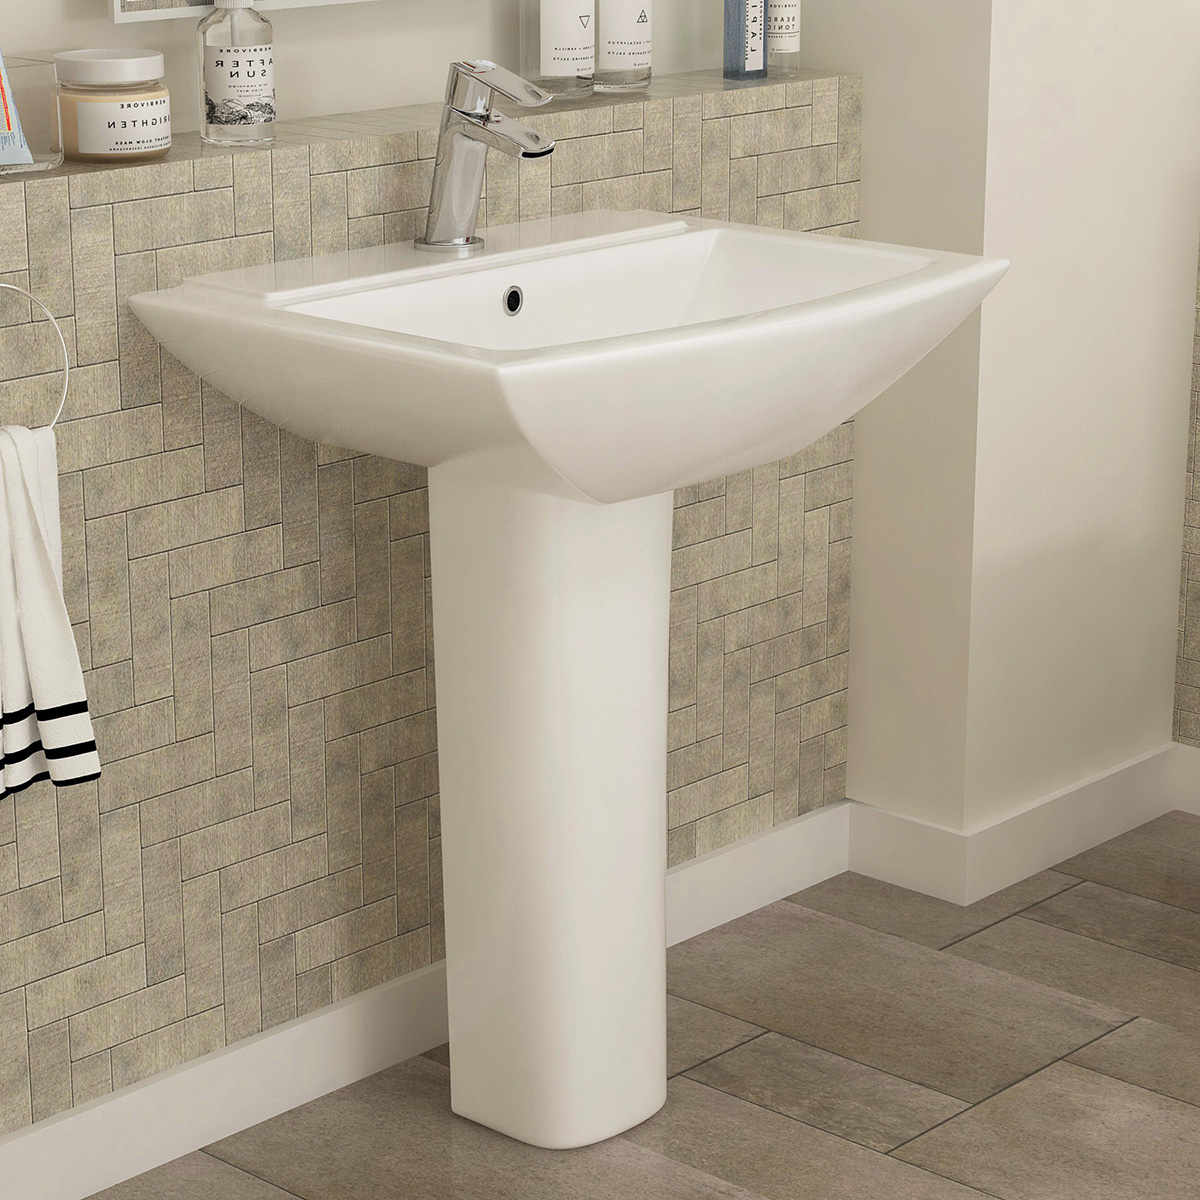 Tips for an Ultra-Modern Bathroom Look with a Basin